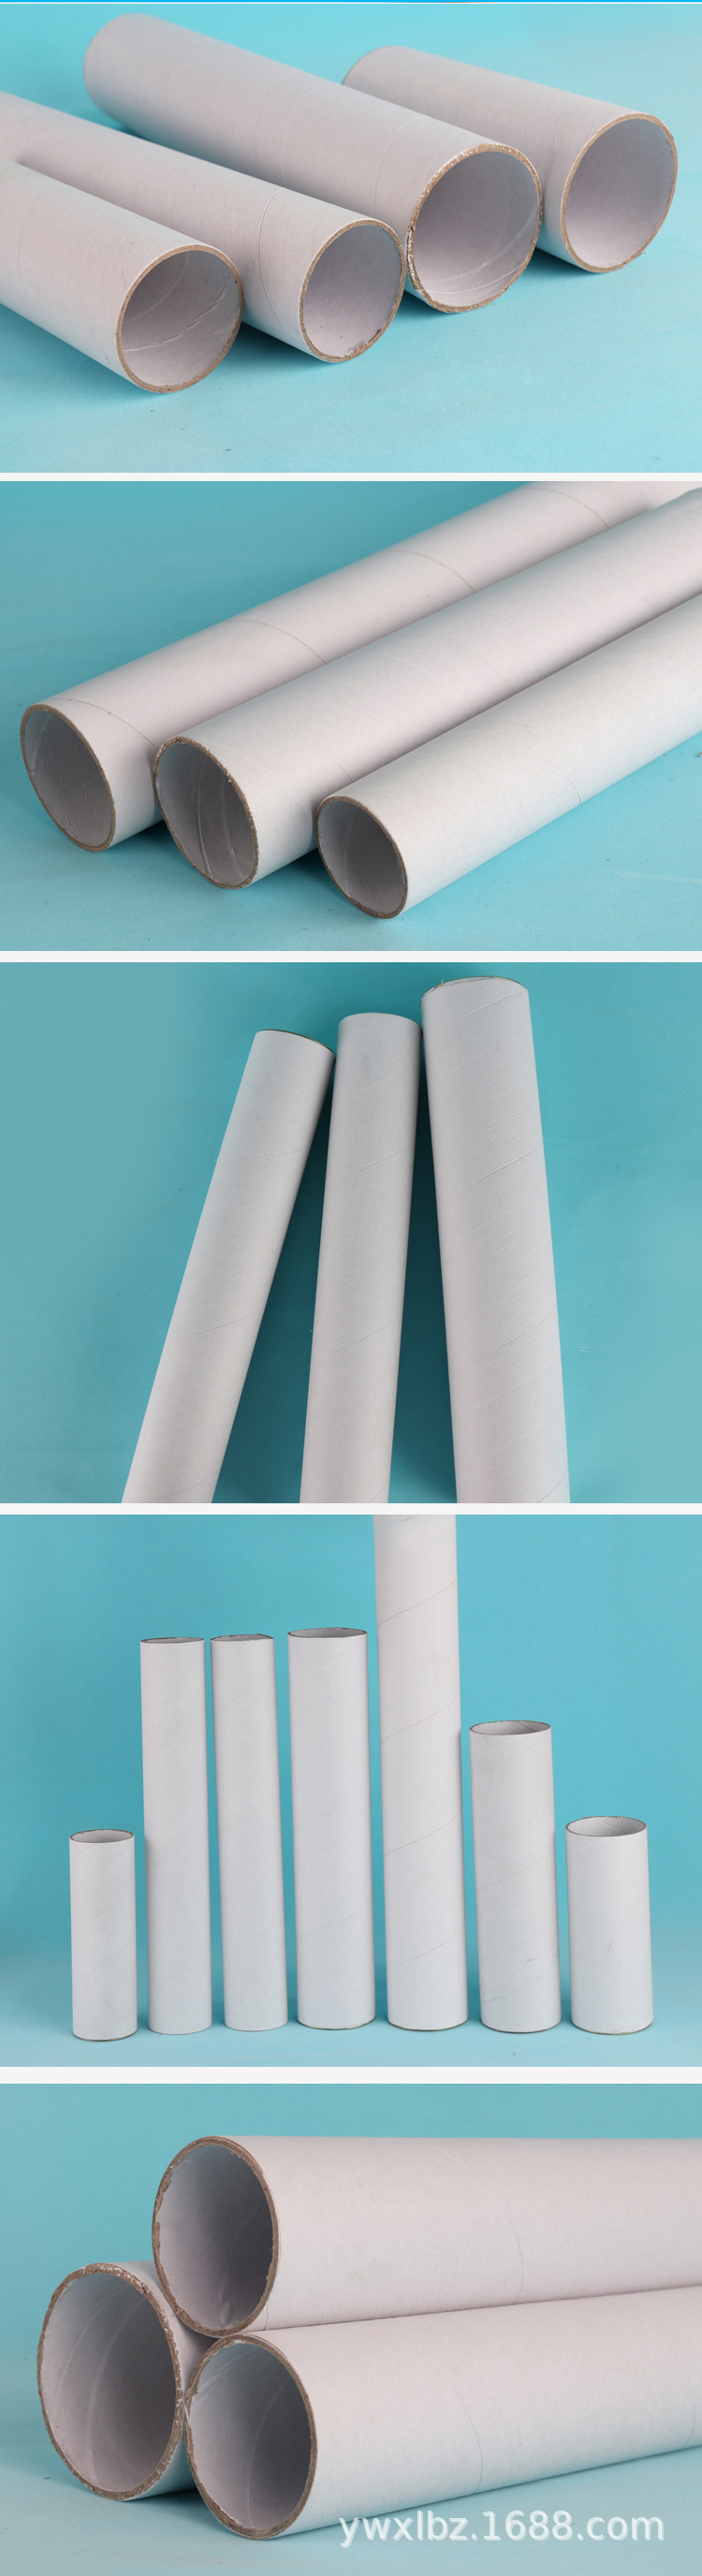 专业订制牛皮纸管创意手工裁剪DIY环保材料 装饰绘画牛皮纸筒卷管